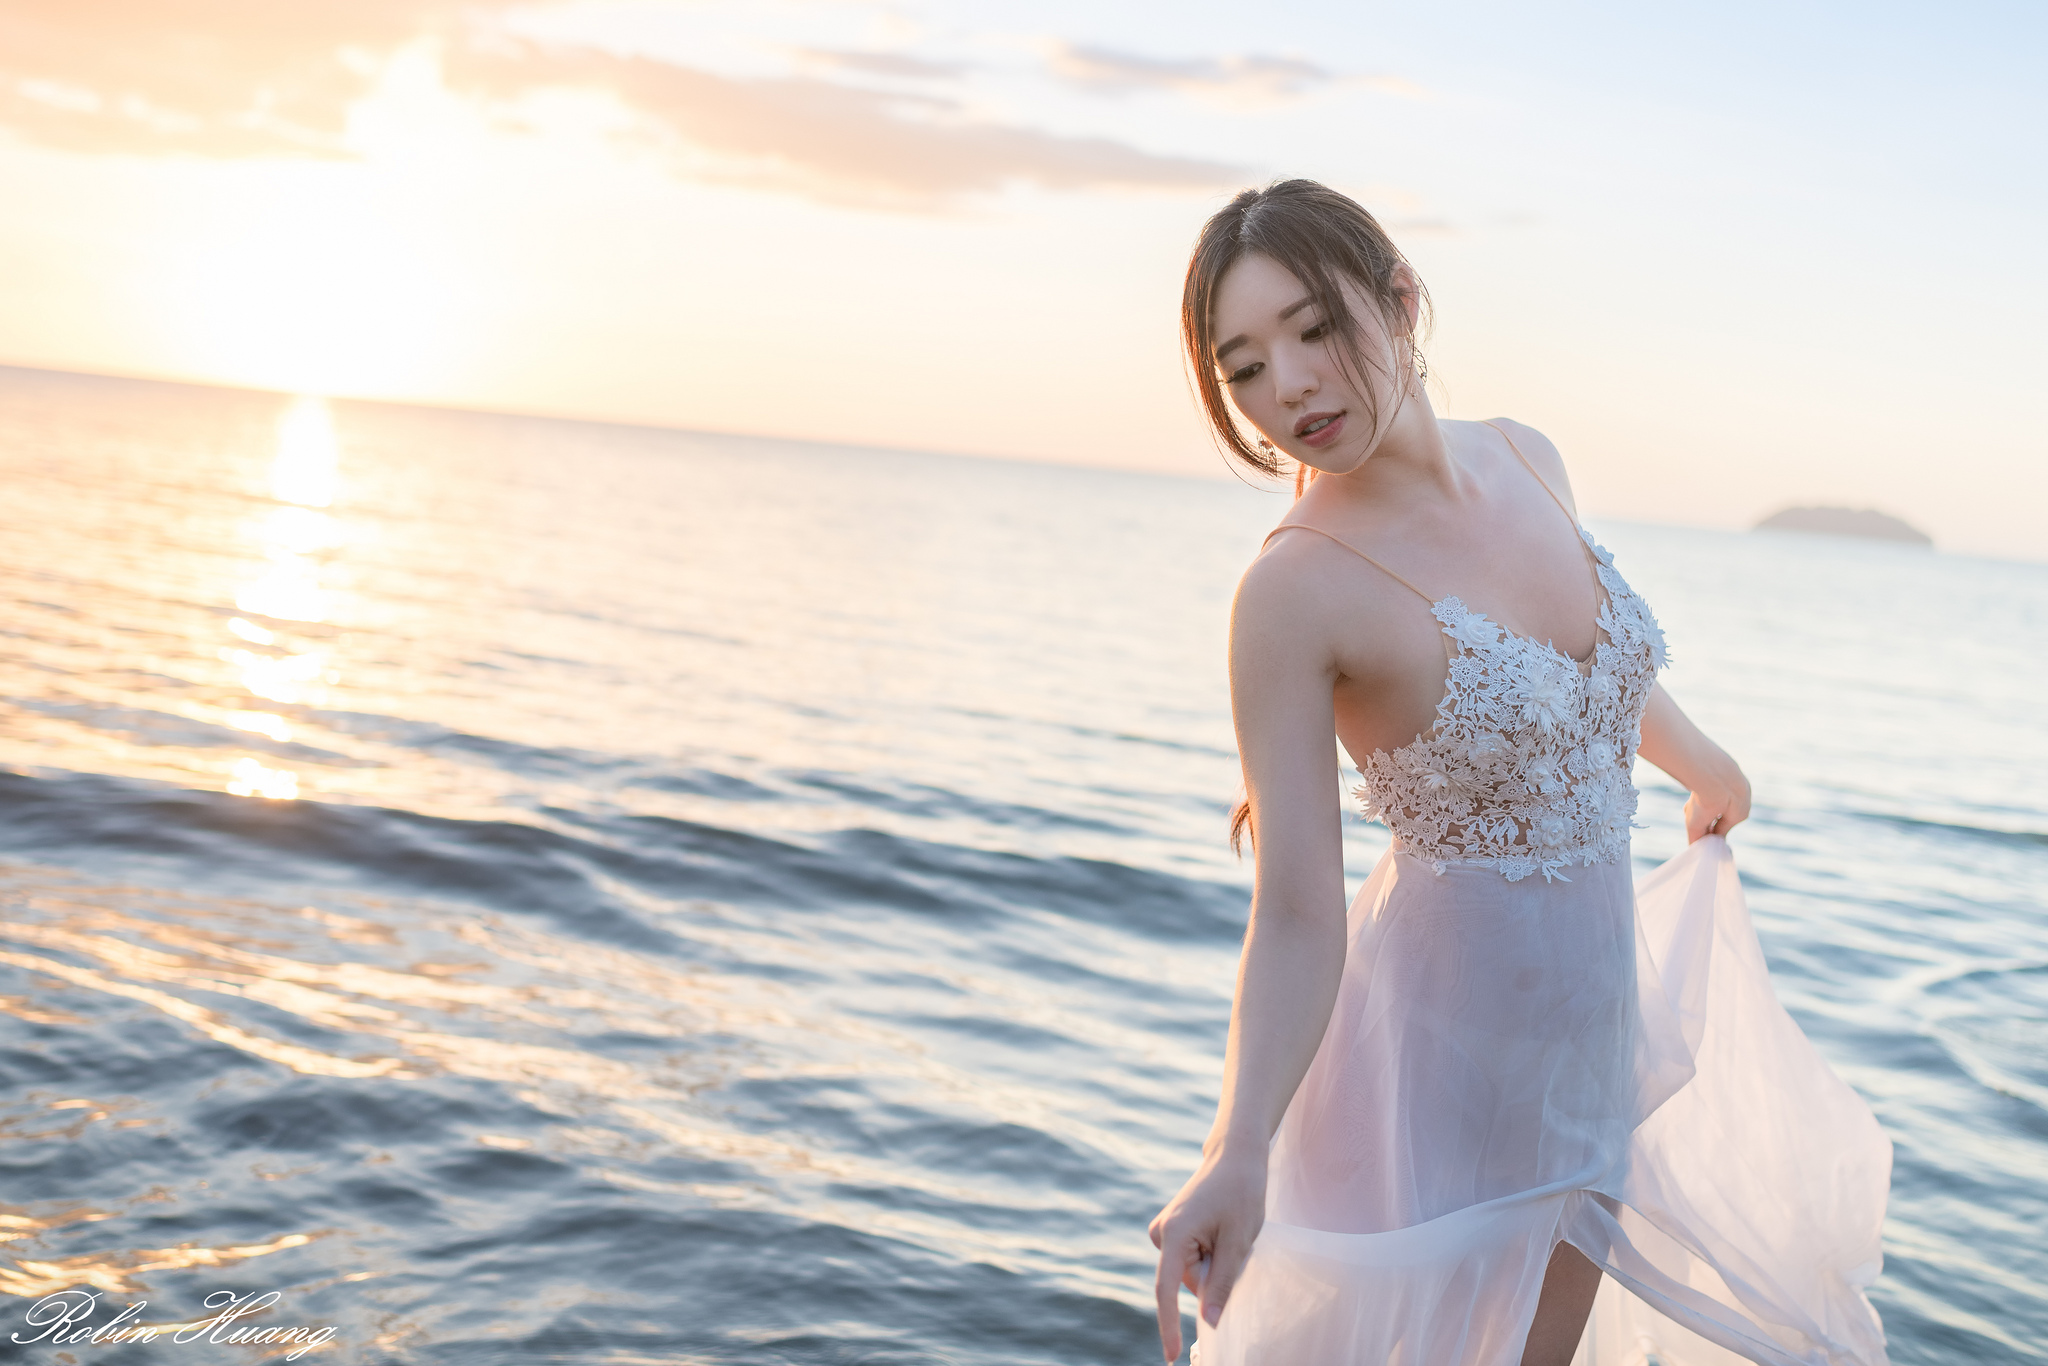 Kiki Hsieh Women Model Brunette Long Hair Ponytail Portrait Dress White Dress Sea Sky Sunset Horizon 2048x1366